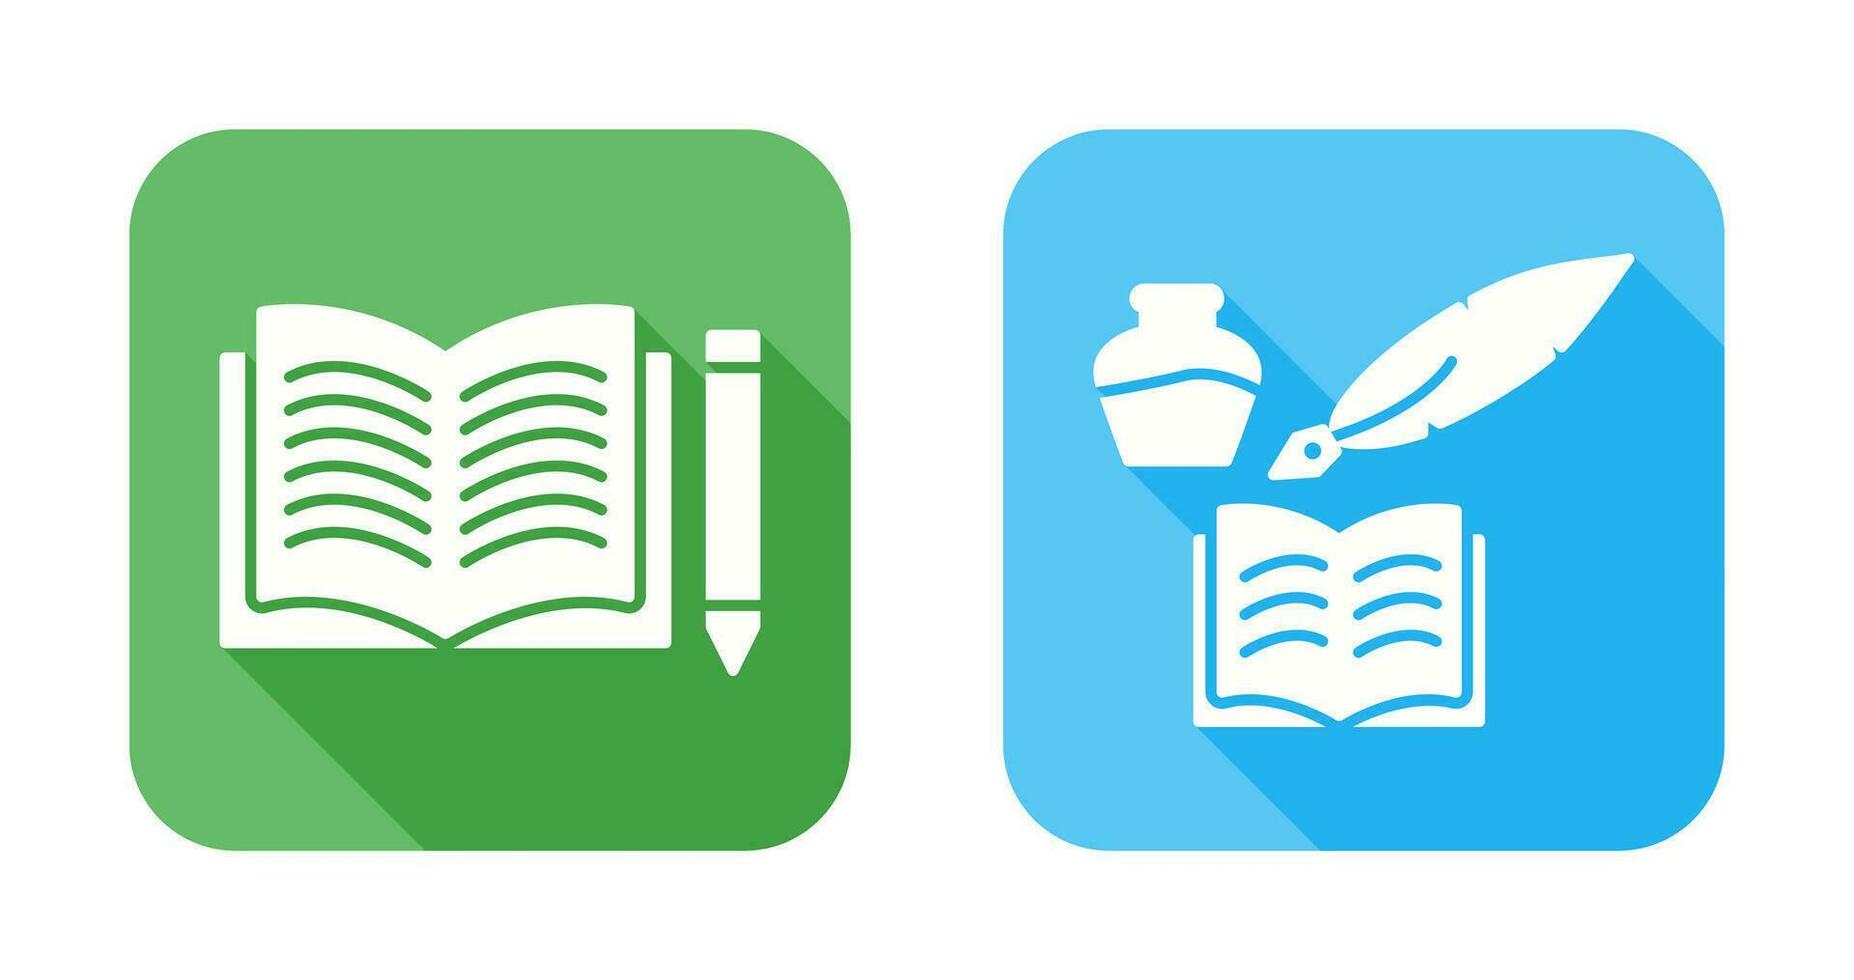 potlood en boek en quilland boek icoon vector